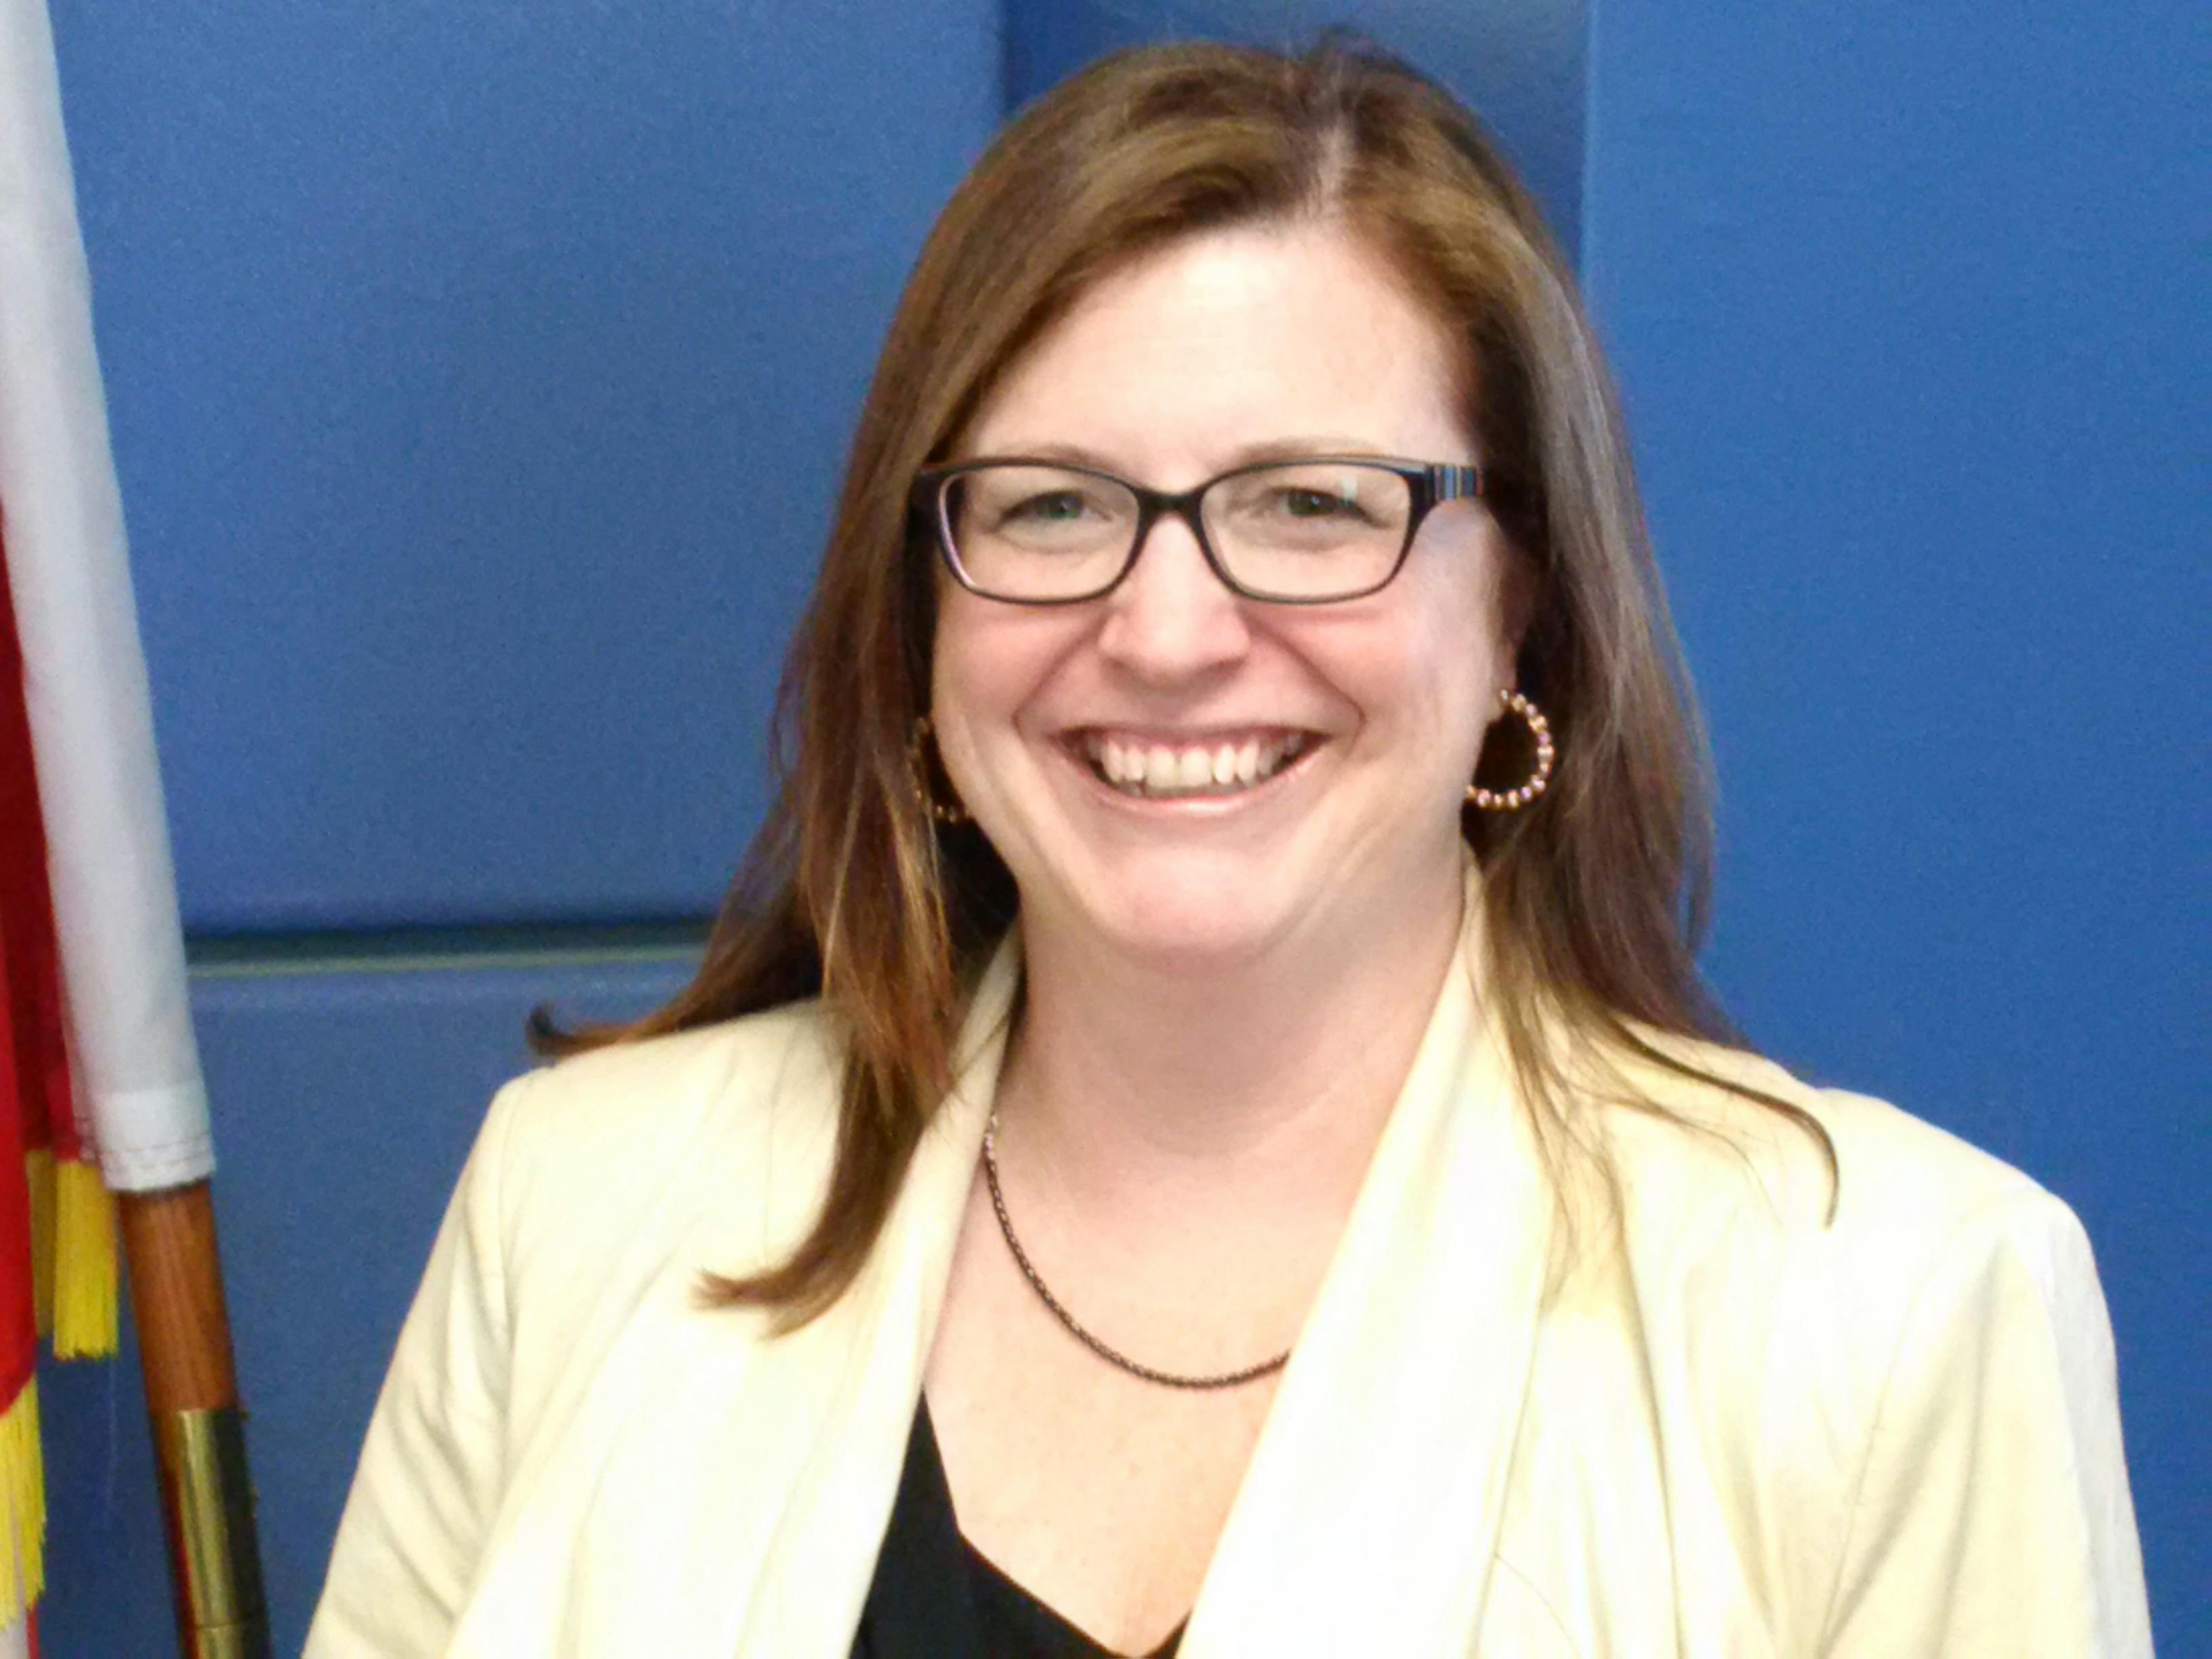 Team member, Barbara Moran